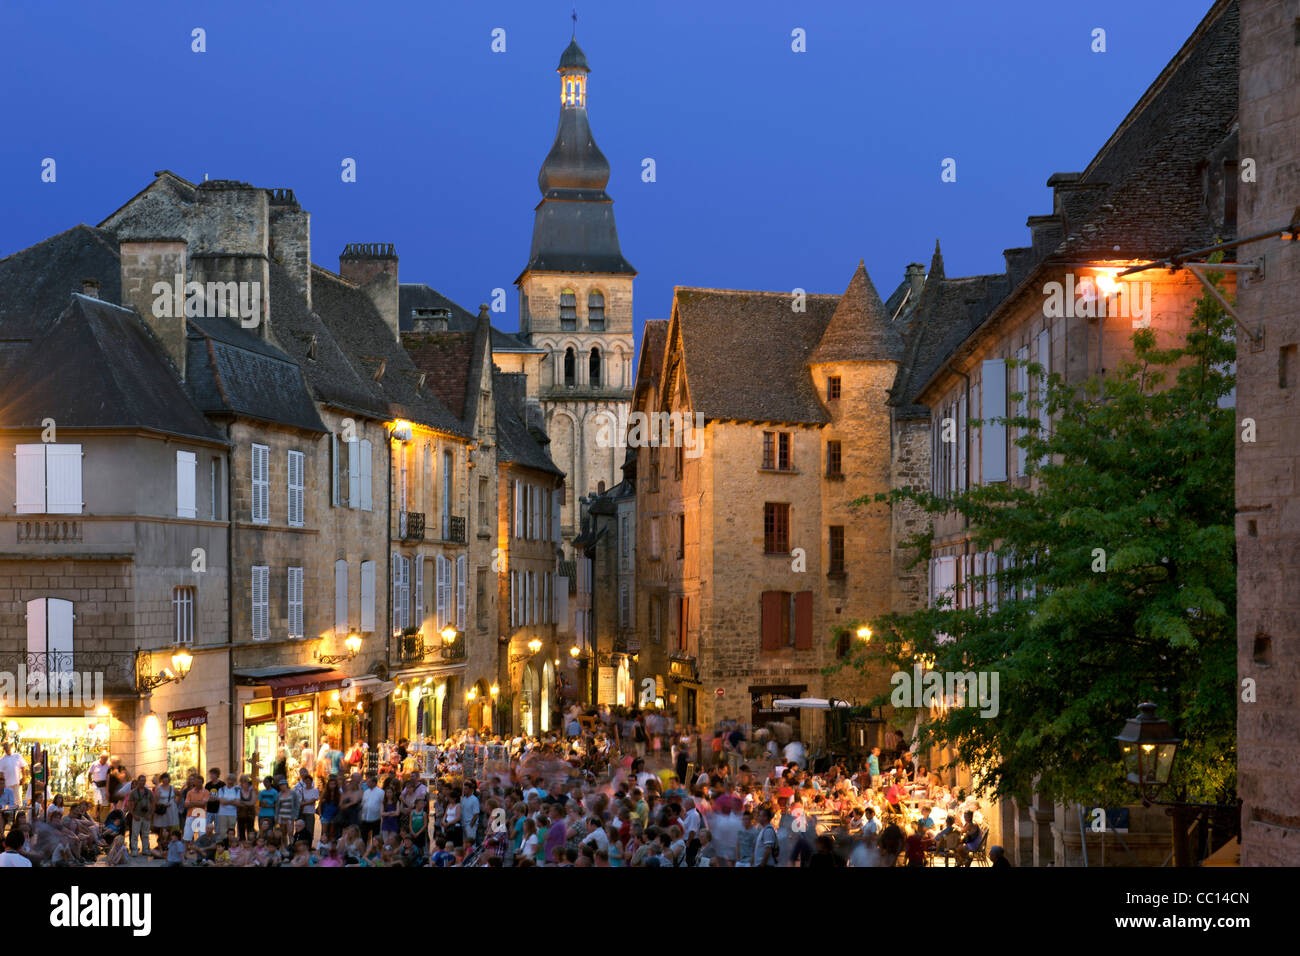 Crépuscule sur la vieille ville de Sarlat, ville située dans la région de la Dordogne au sud-ouest de la France. Banque D'Images